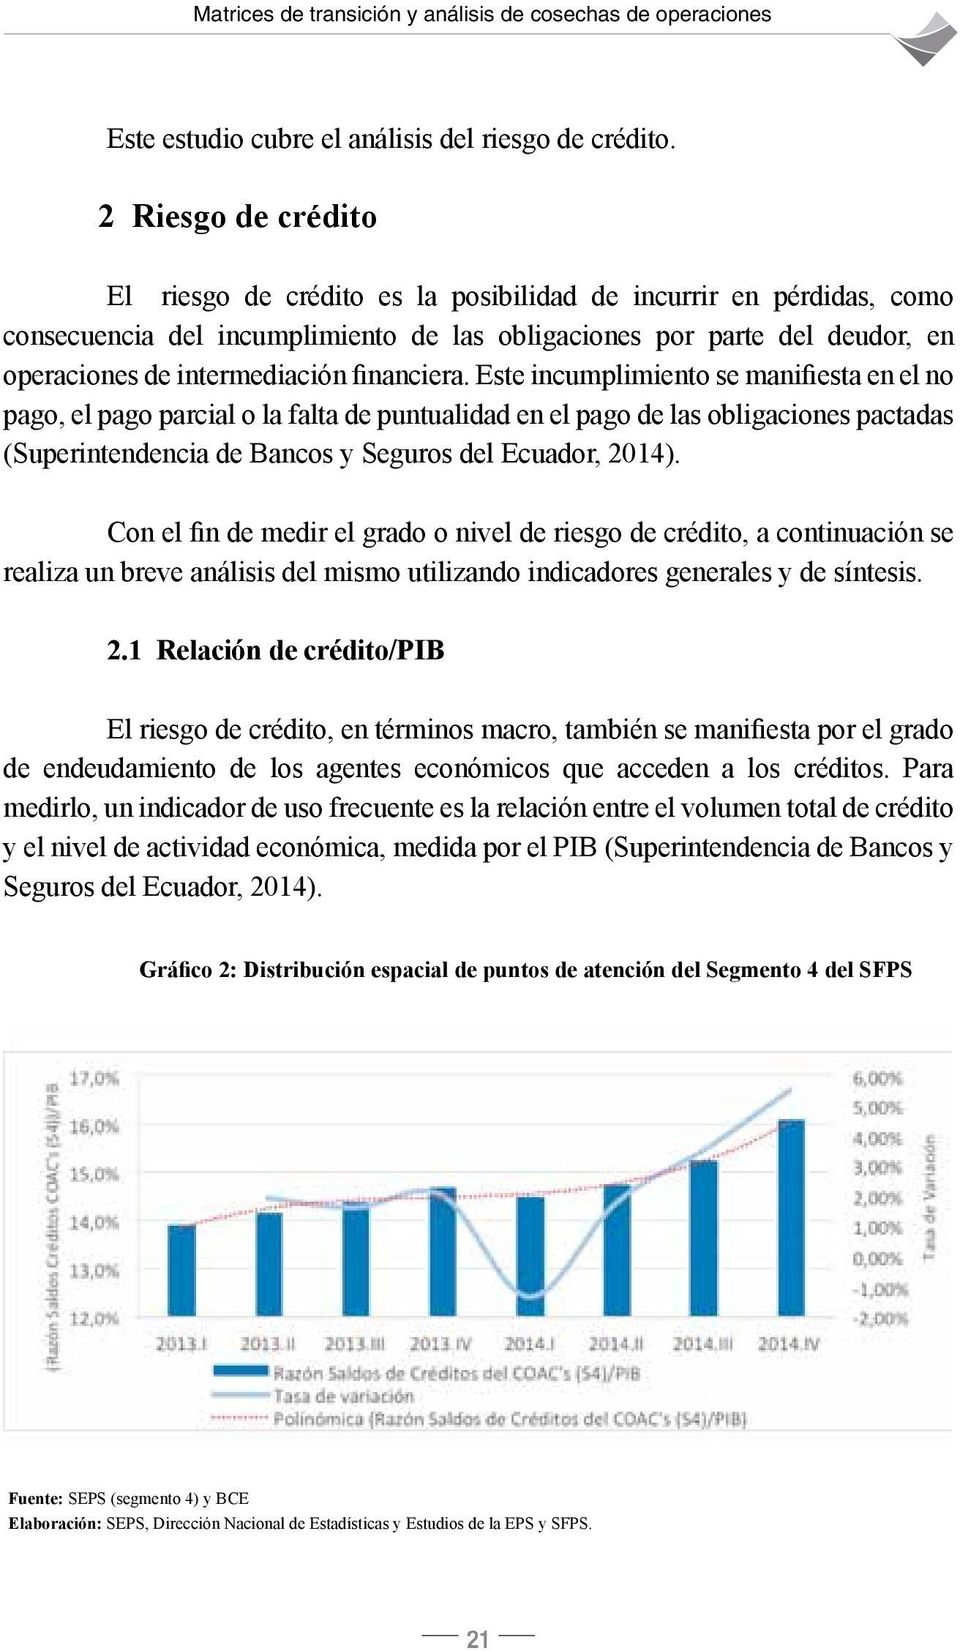 financiera. Este incumplimiento se manifiesta en el no pago, el pago parcial o la falta de puntualidad en el pago de las obligaciones pactadas (Superintendencia de Bancos y Seguros del Ecuador, 2014).